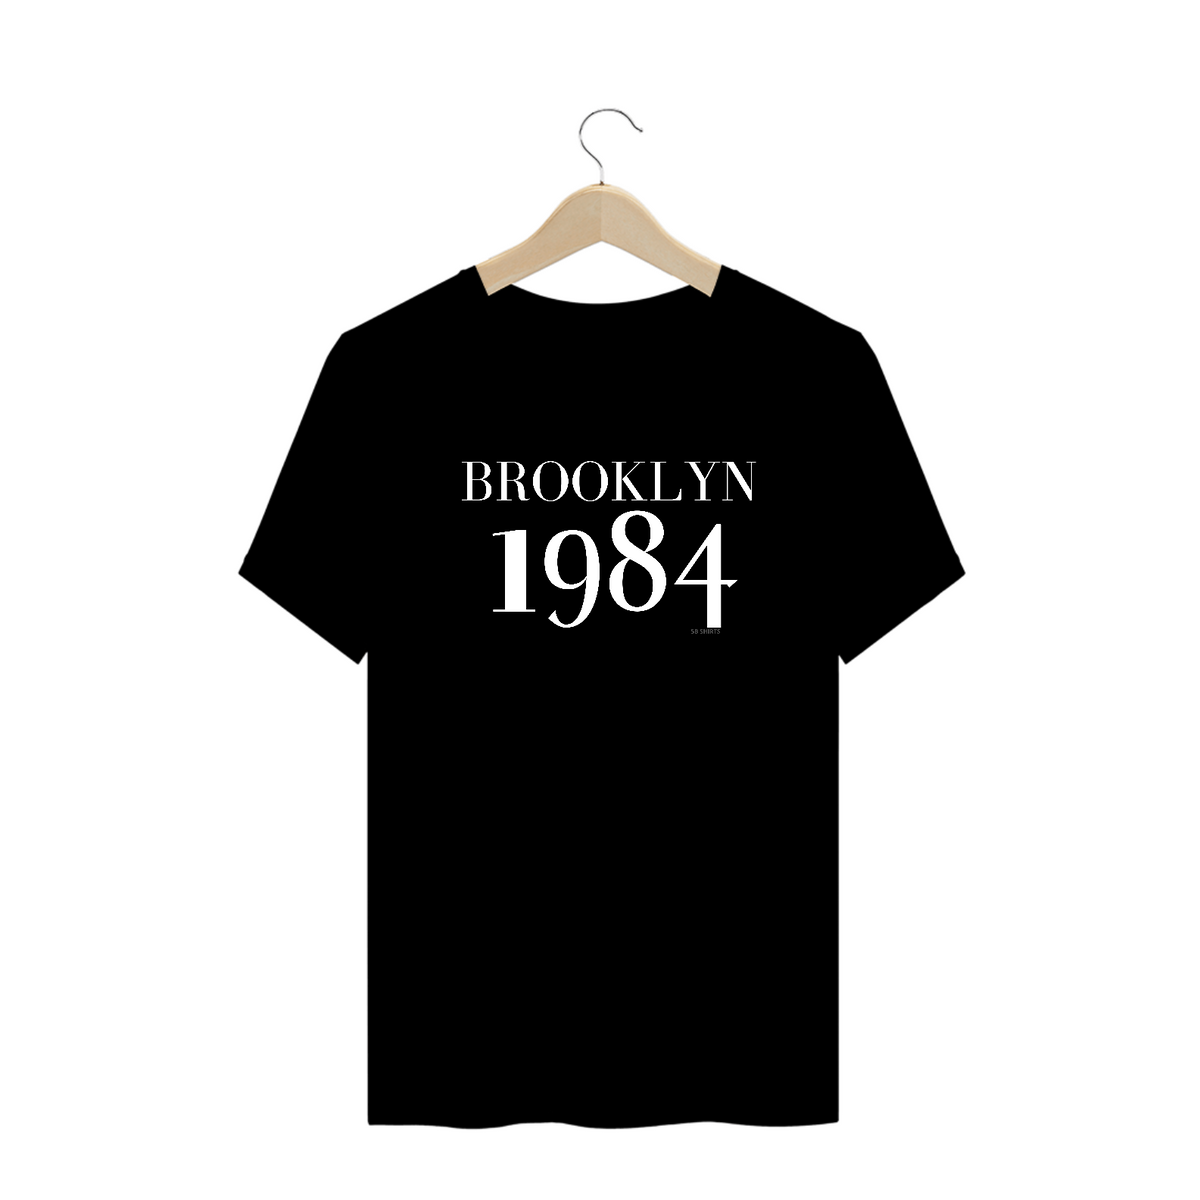 Nome do produto: Brooklyn 1984 plus size